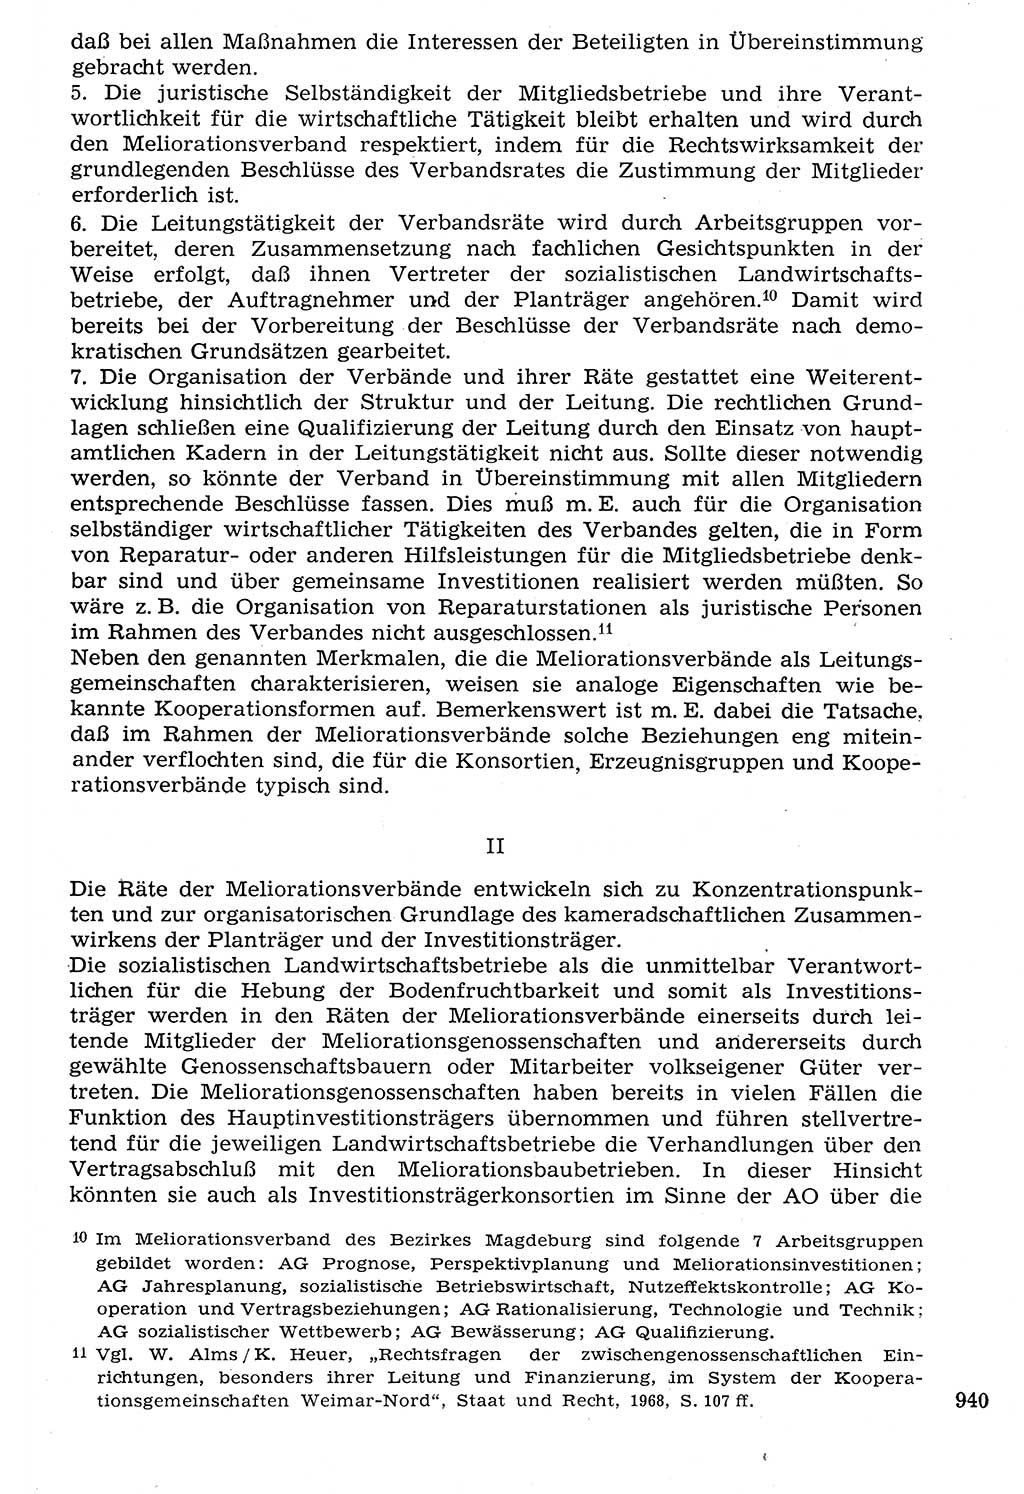 Staat und Recht (StuR), 17. Jahrgang [Deutsche Demokratische Republik (DDR)] 1968, Seite 940 (StuR DDR 1968, S. 940)